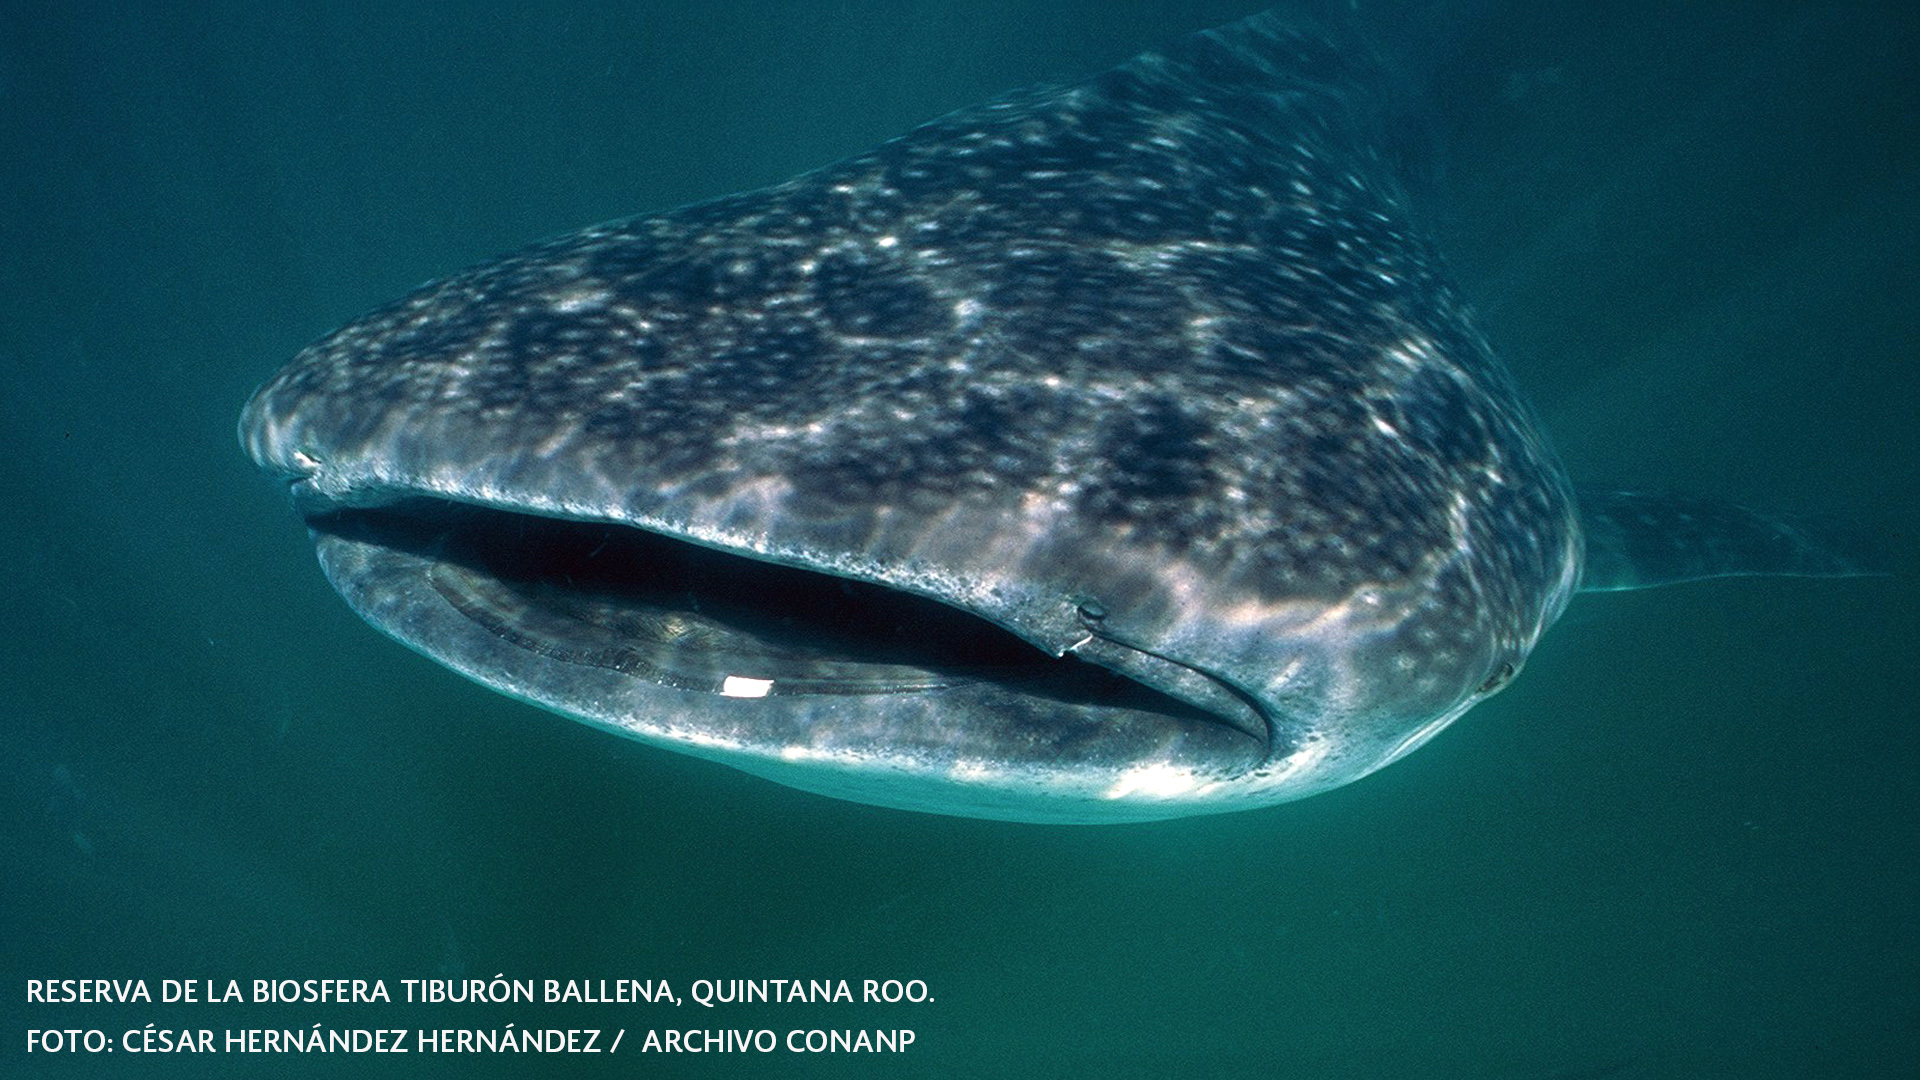 México es un país privilegiado al contar con la presencia del tiburón ballena (Rhincodon typus).